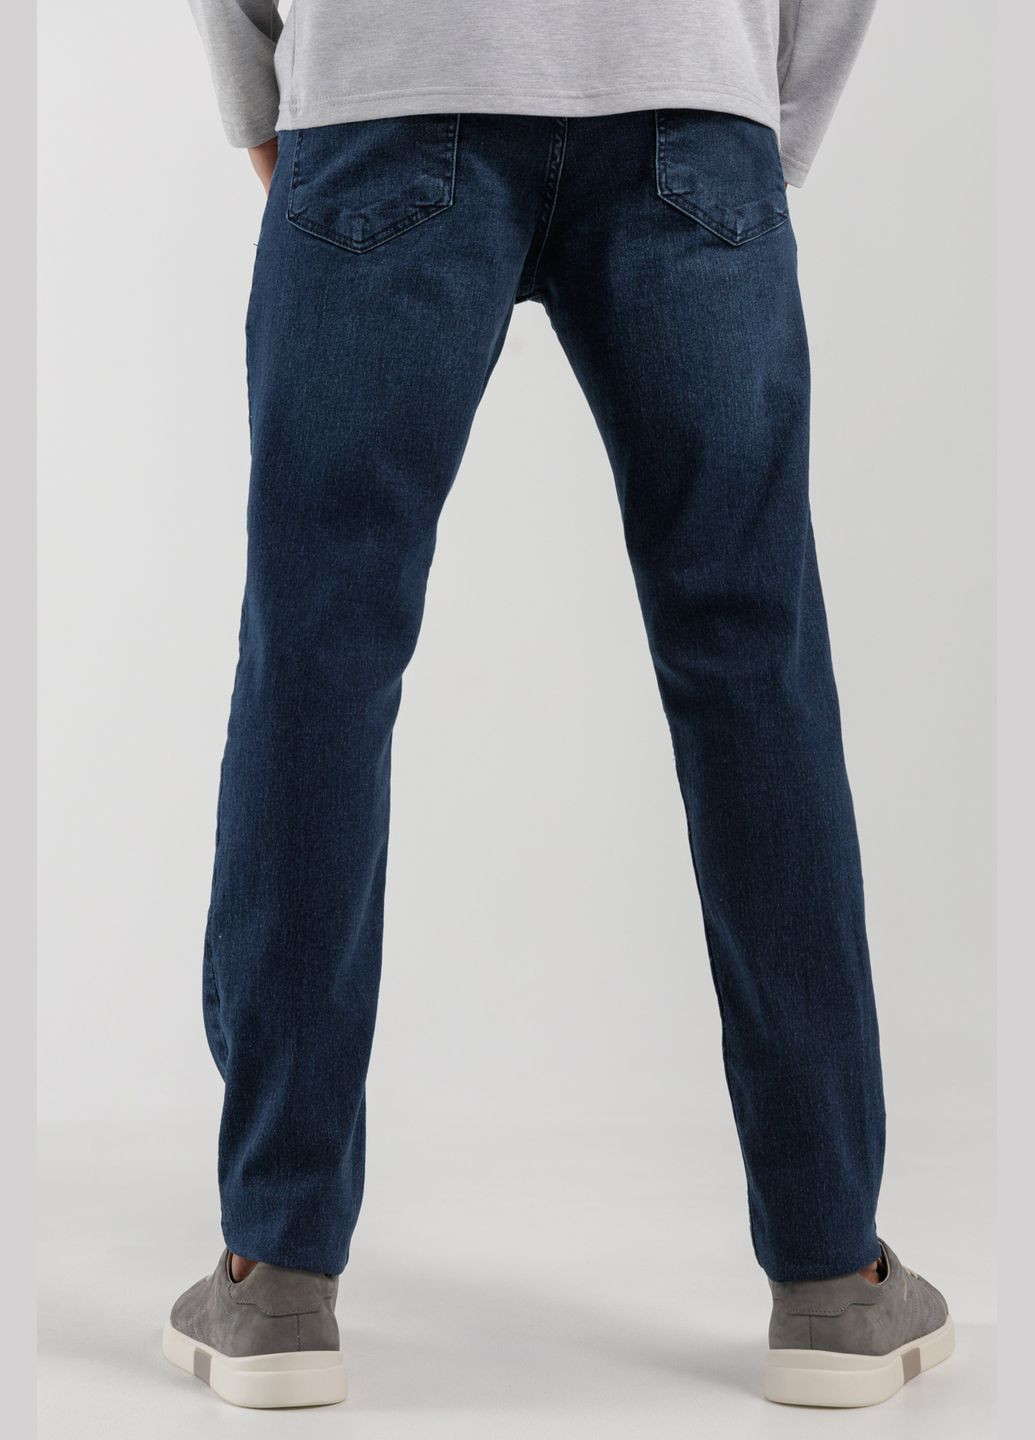 Синие демисезонные регюлар фит джинсы Figo